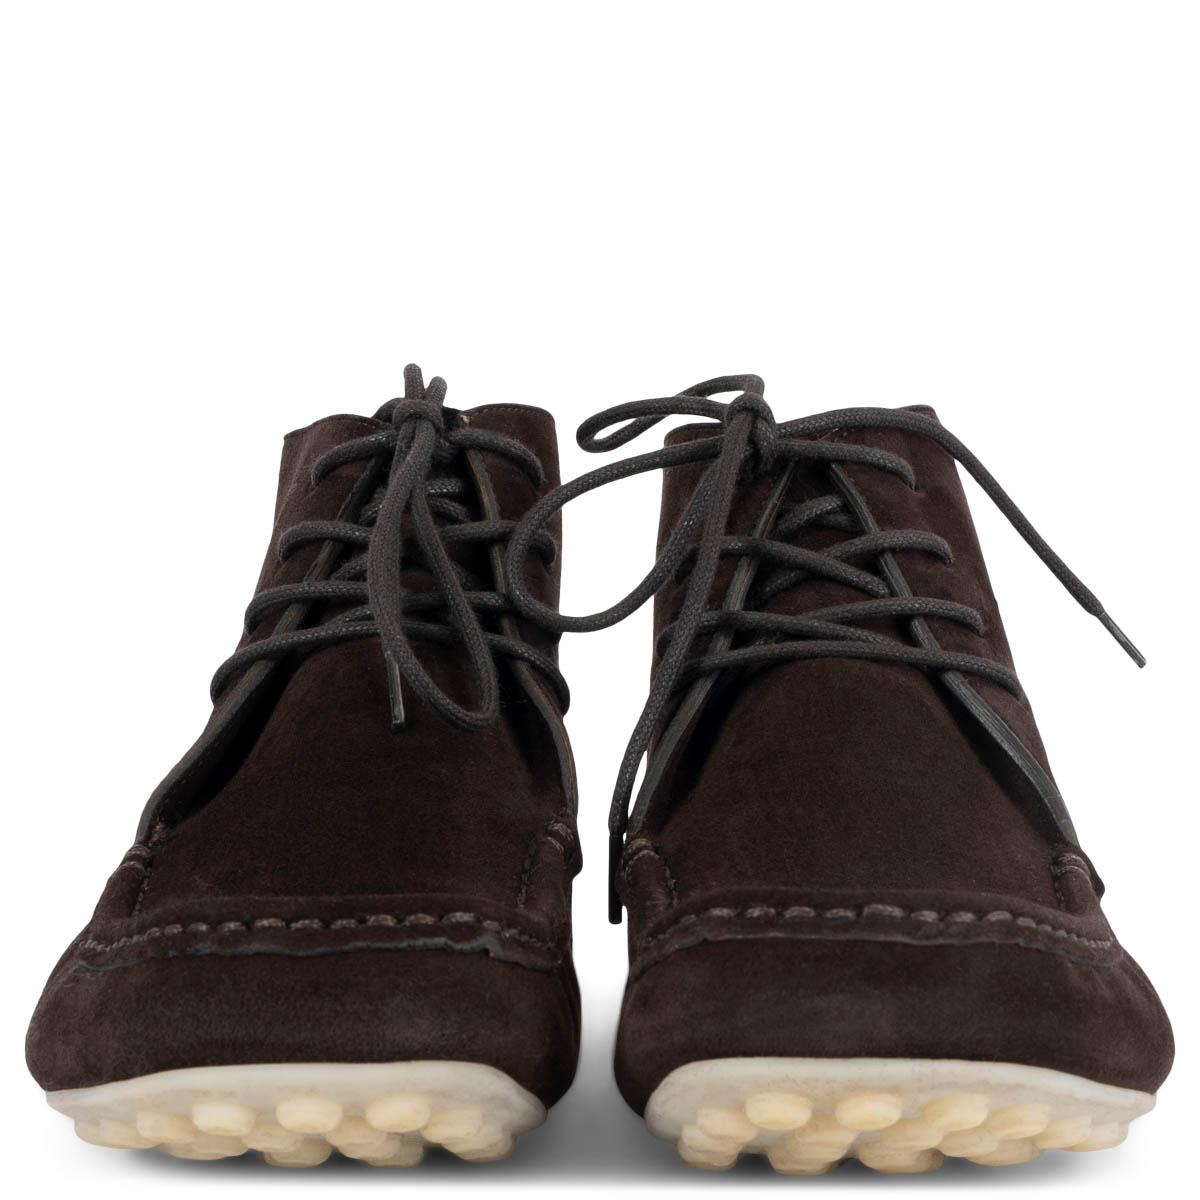 100% authentiques Loro Piana Dot sole lace-up ankle boots en daim marron chocolat avec une semelle en caoutchouc blanc cassé. Ils ont été portés et présentent une légère usure sur le devant. 

Mesures
Modèle	FAN3946
Taille imprimée	37.5
Taille des